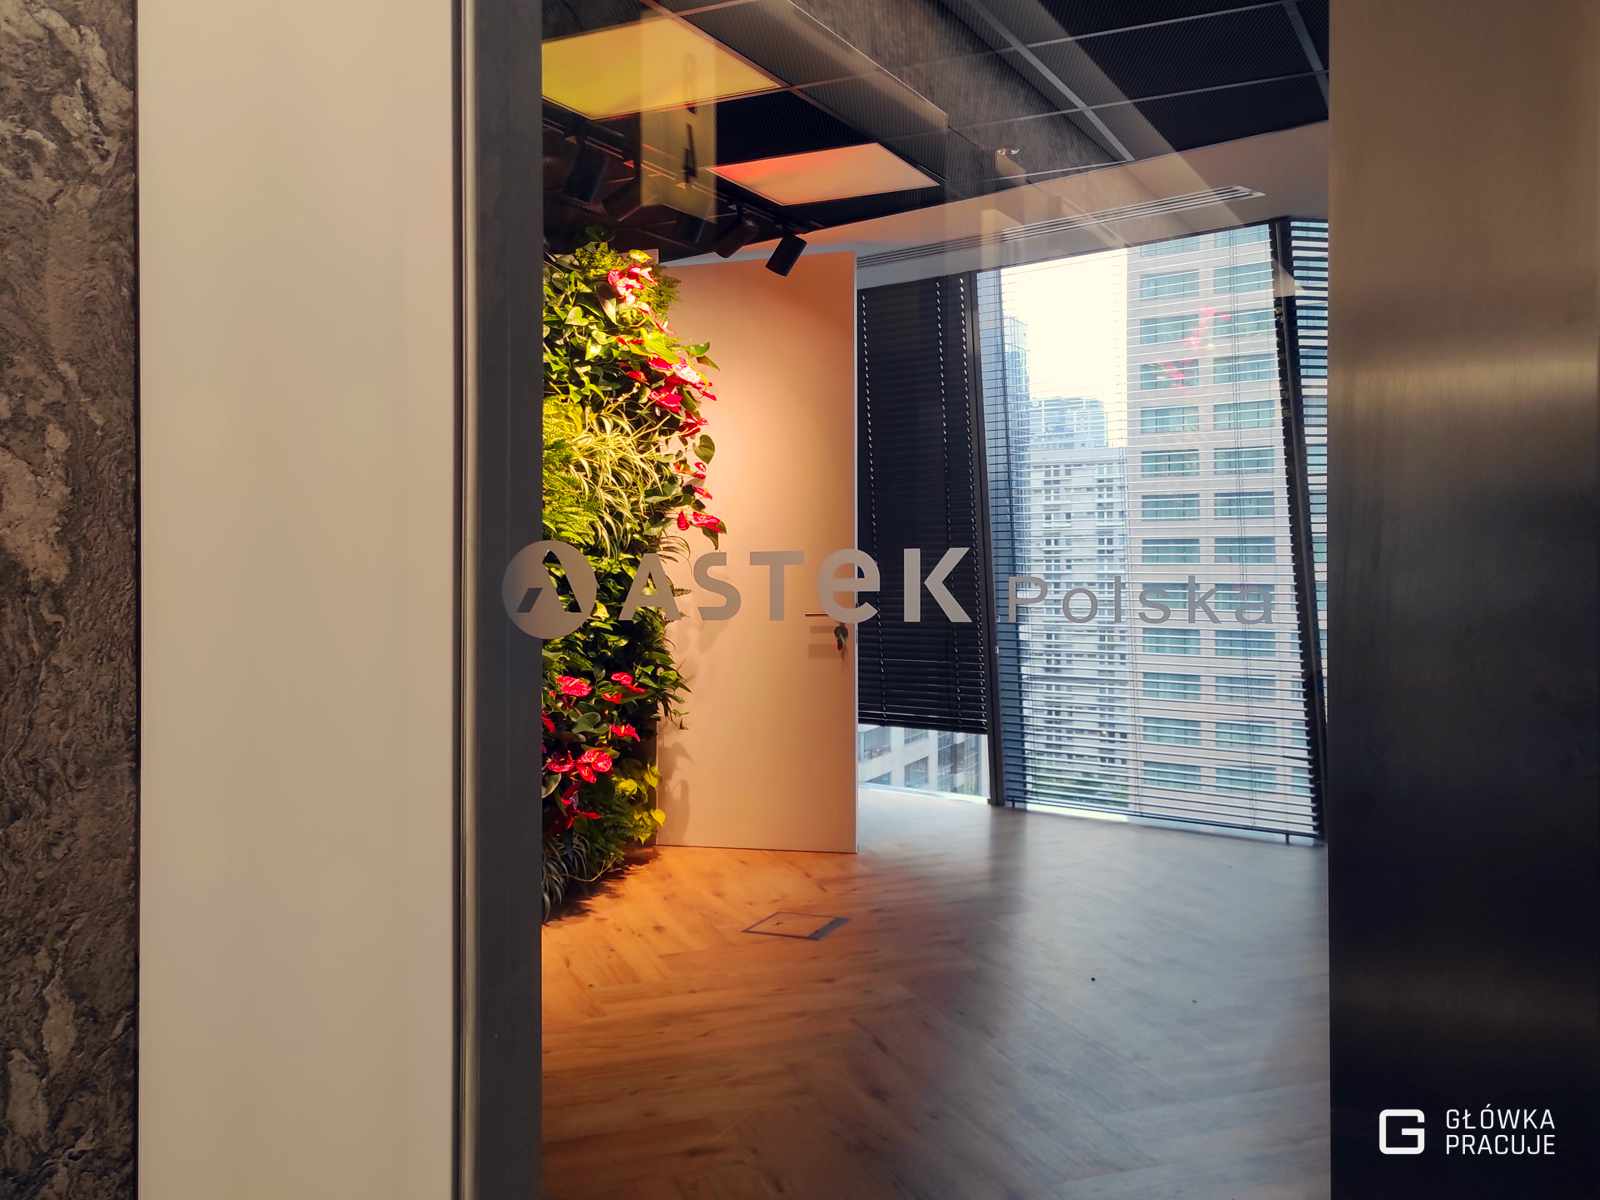 Główka Pracuje oznakowanie biura logo wycięte z folii mrożonej wyklejone na szklanych drzwiach Warszawa